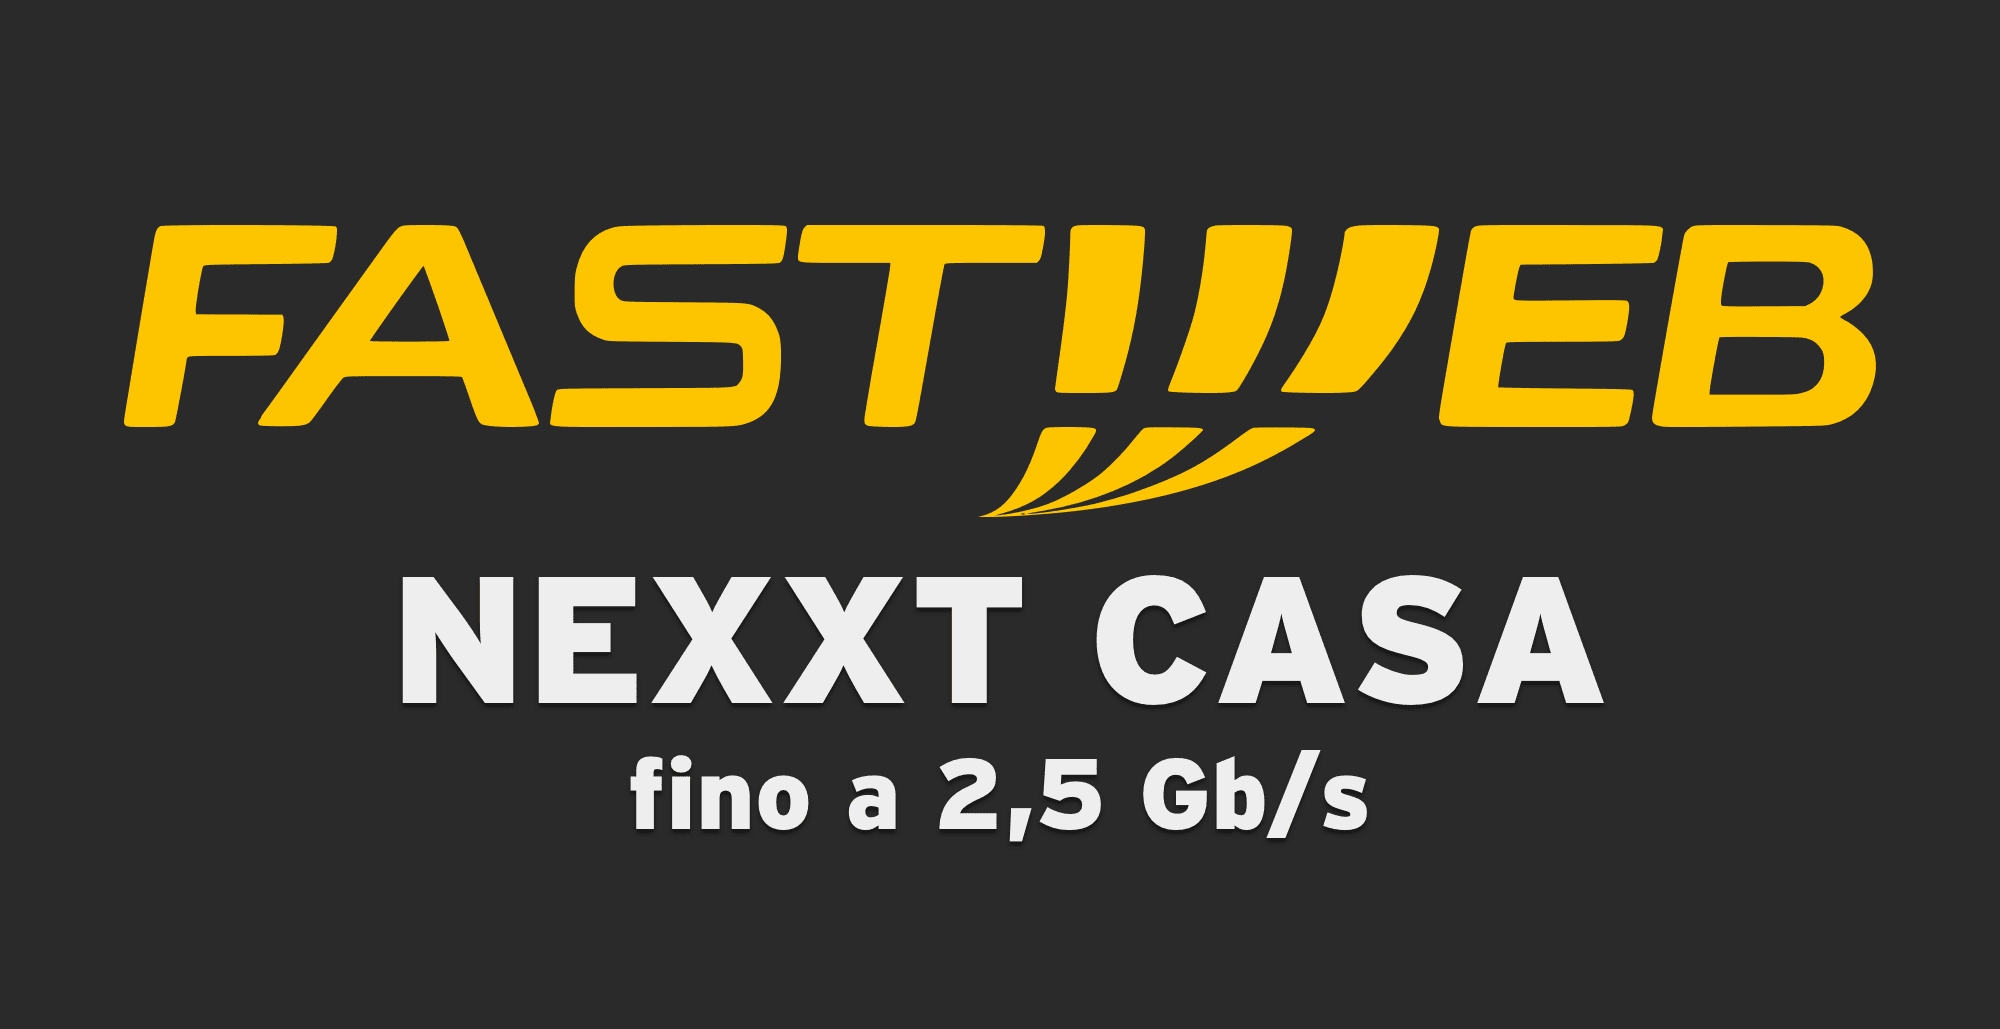 Fastweb NEXXT Casa. Internet fino a 2,5 gigabit al secondo